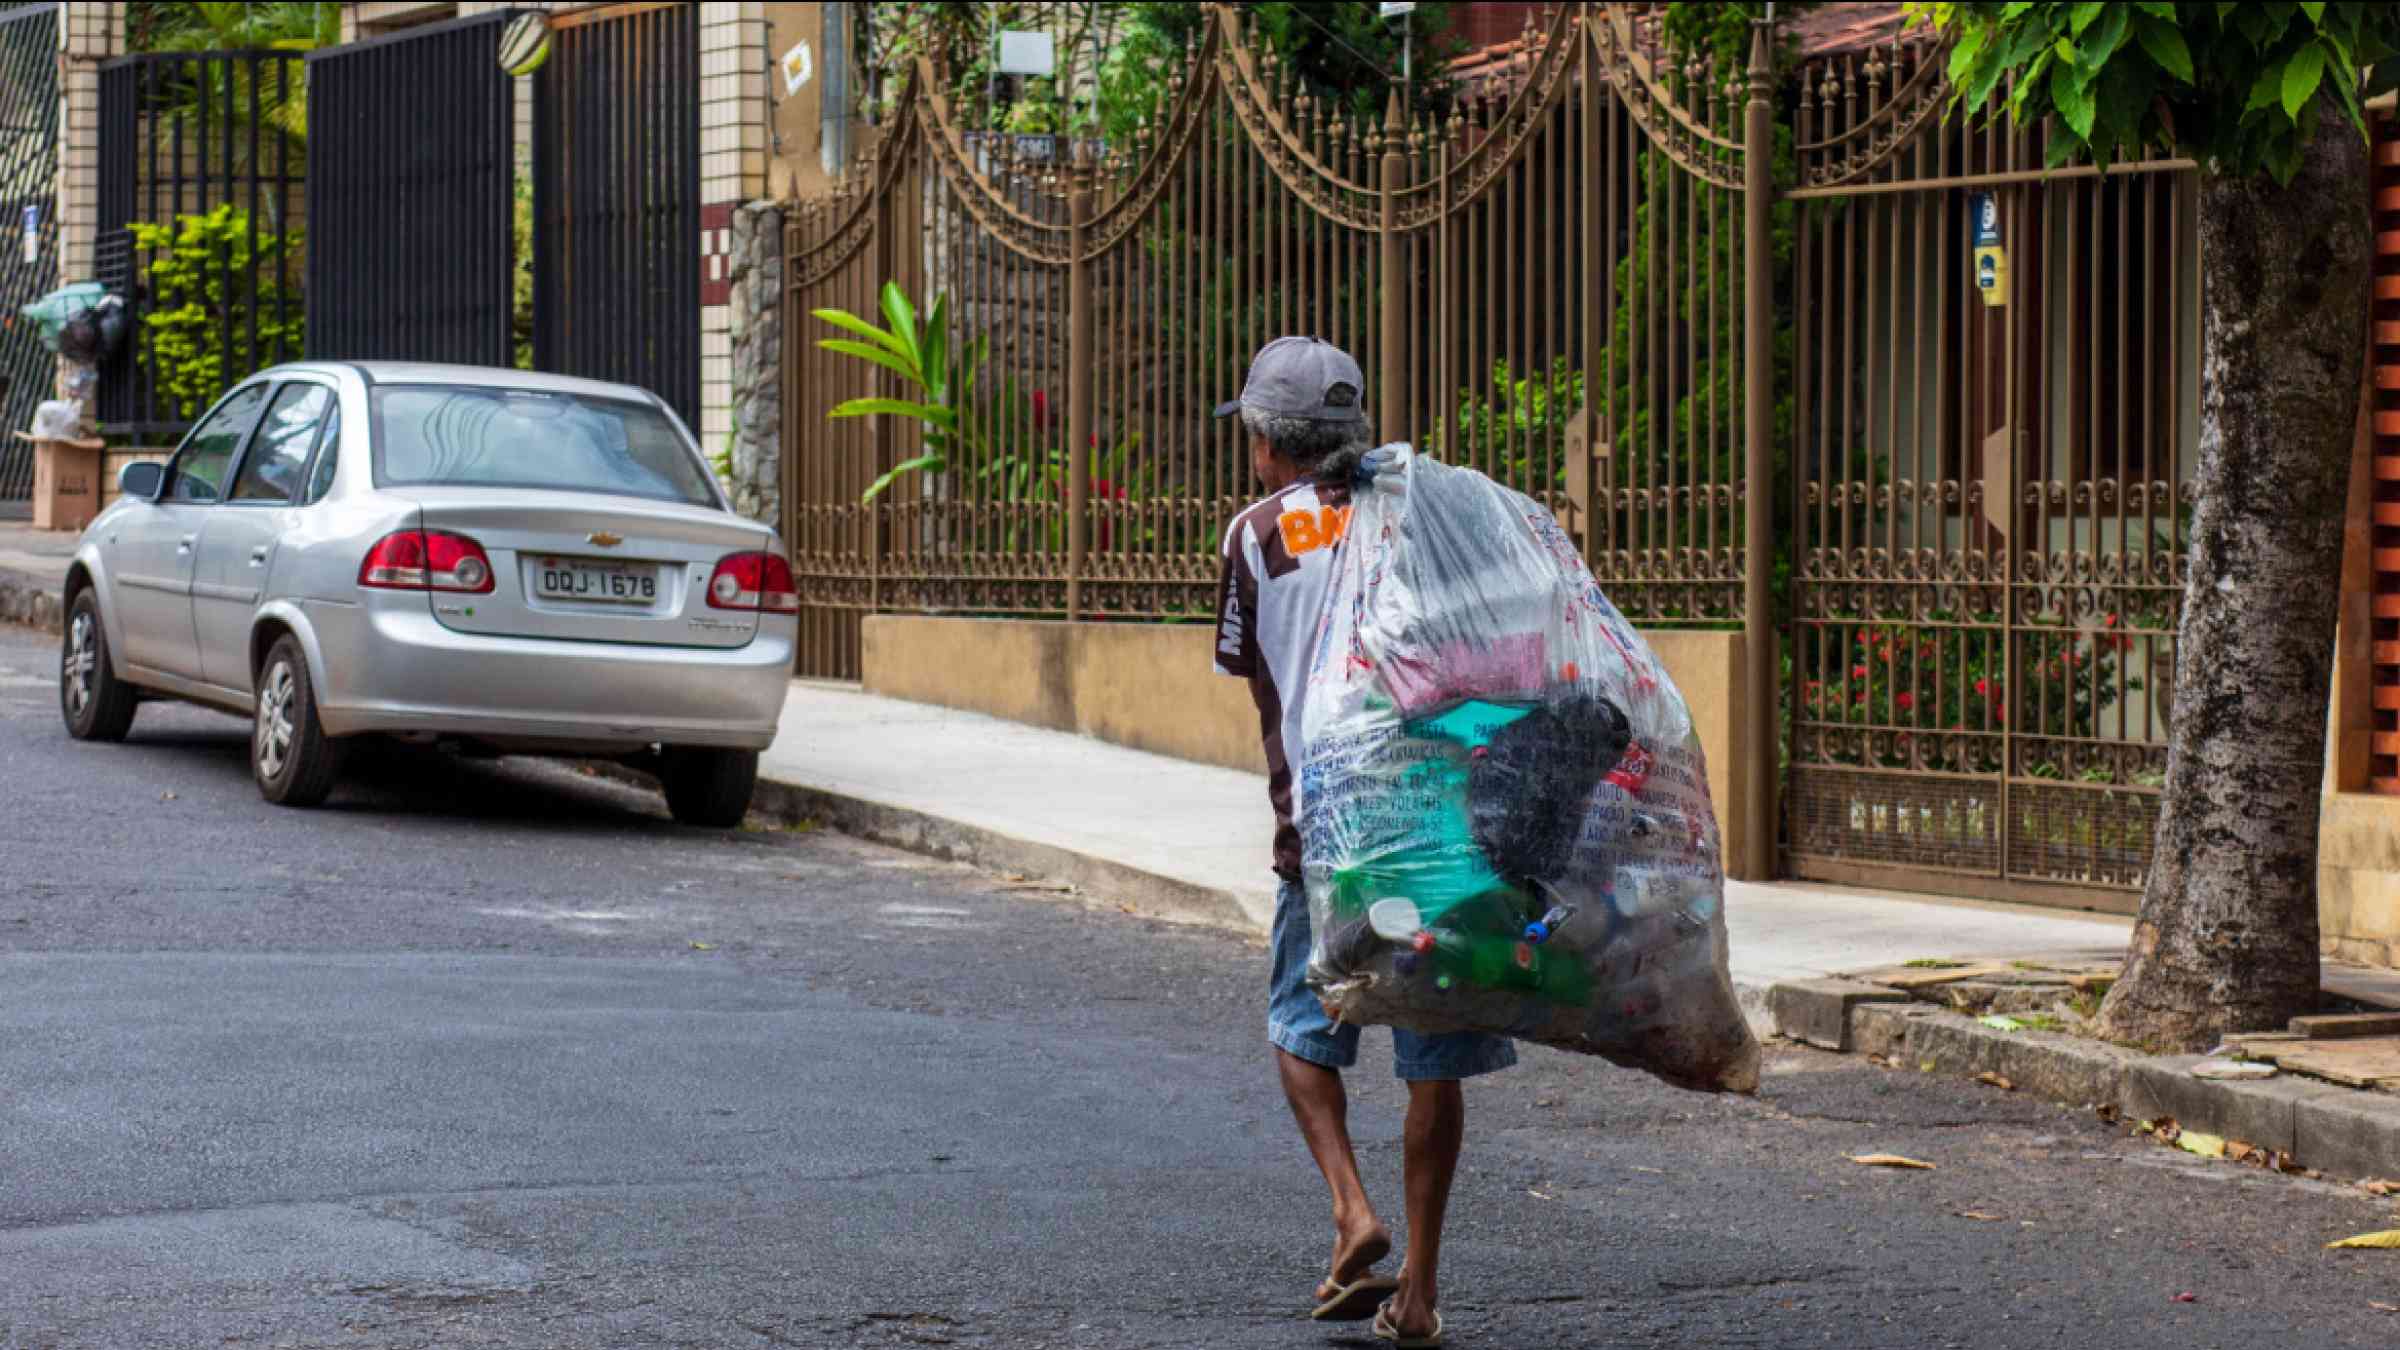 A waste picker walking on the street in Brazil